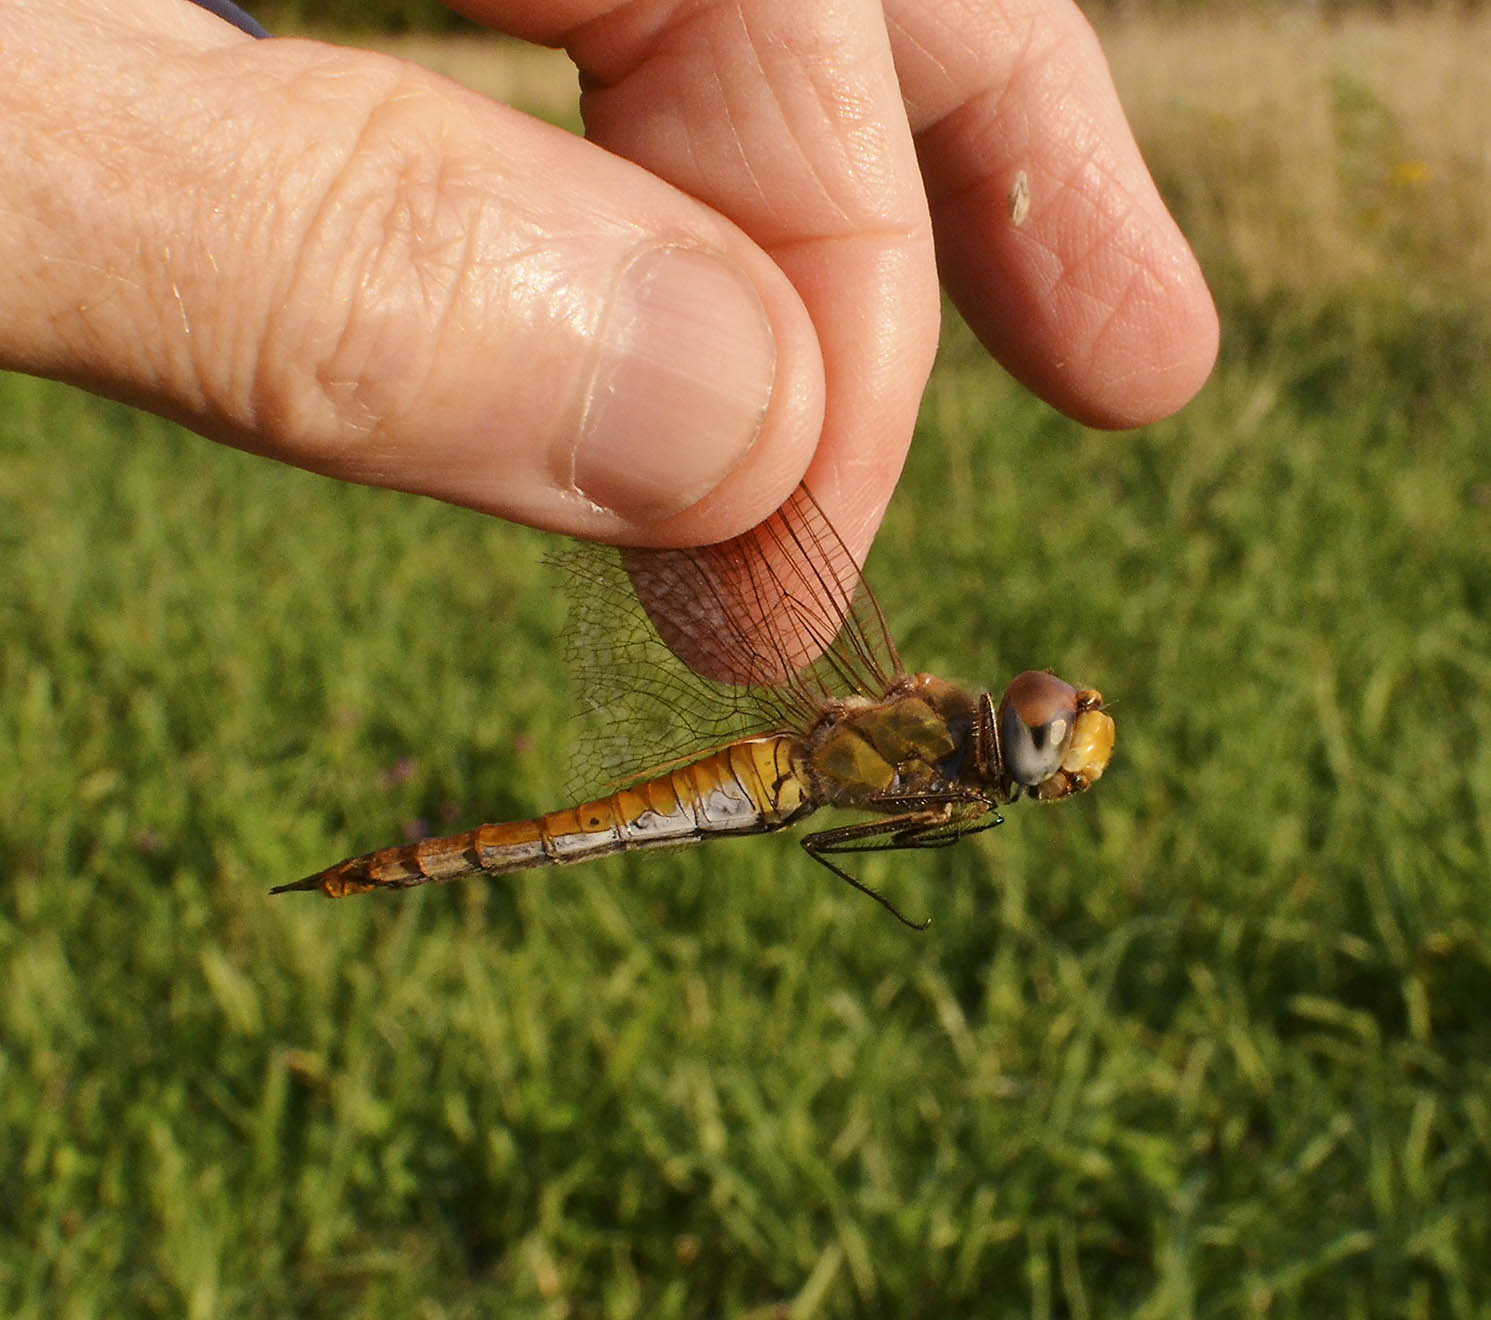 Wandering Glider Dragonfly, female